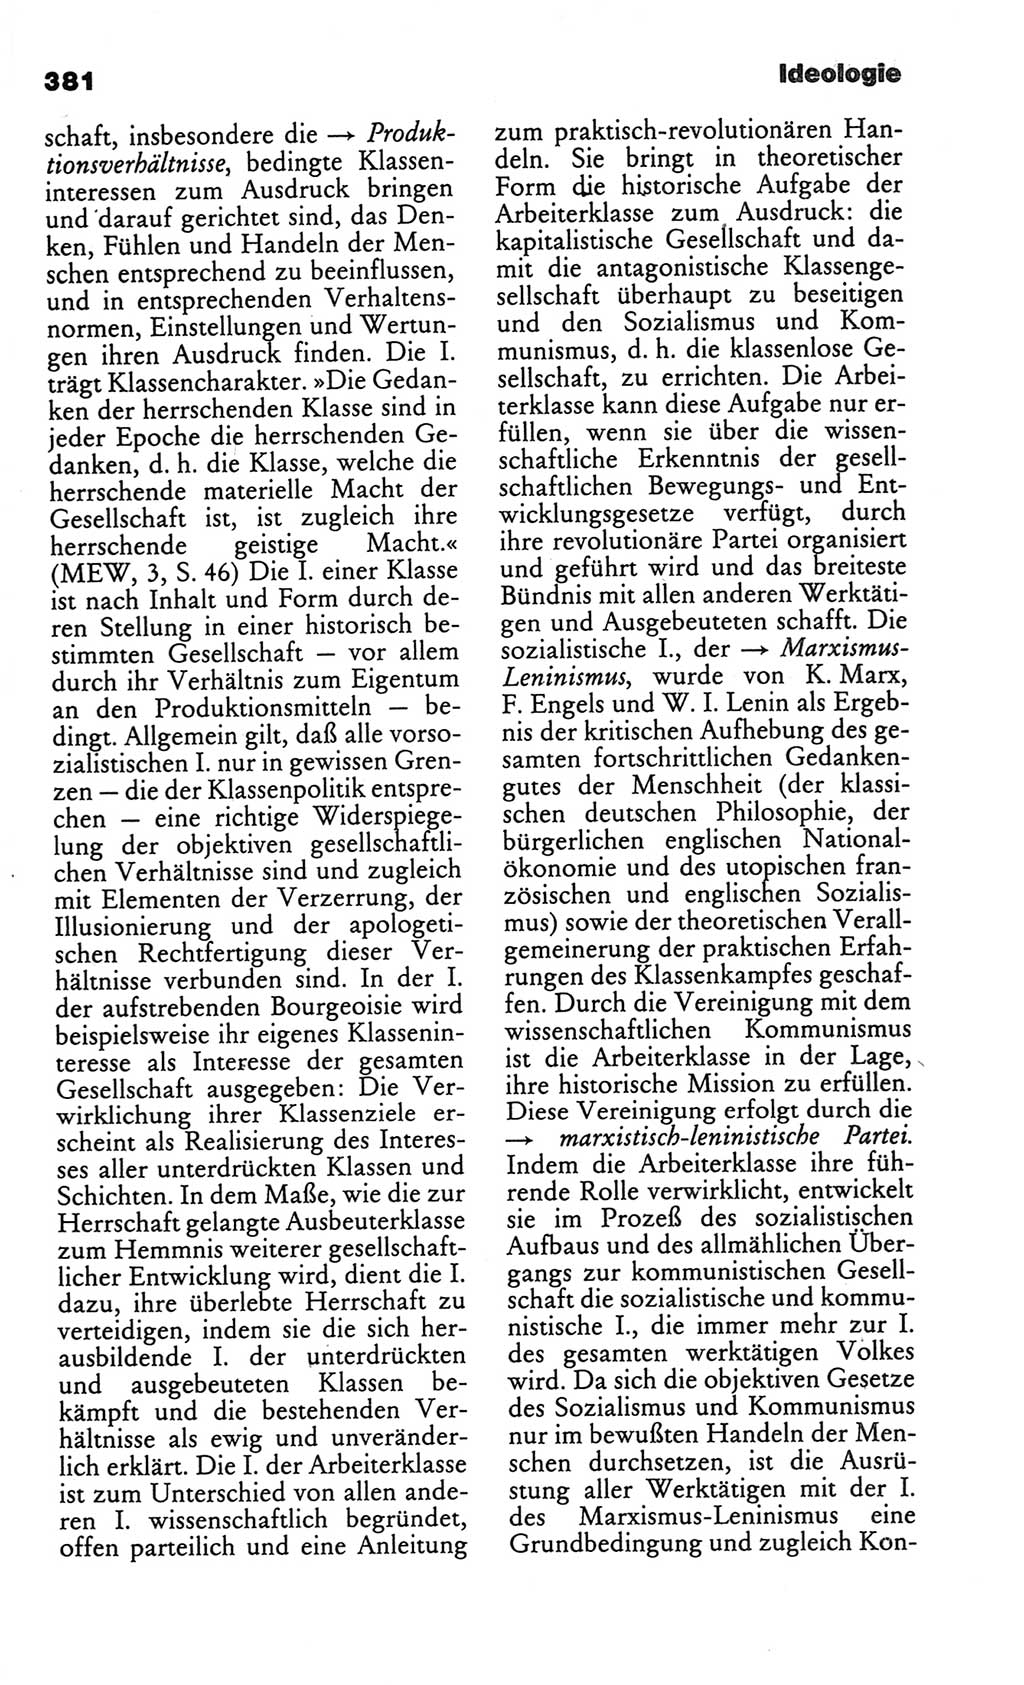 Kleines politisches Wörterbuch [Deutsche Demokratische Republik (DDR)] 1986, Seite 381 (Kl. pol. Wb. DDR 1986, S. 381)